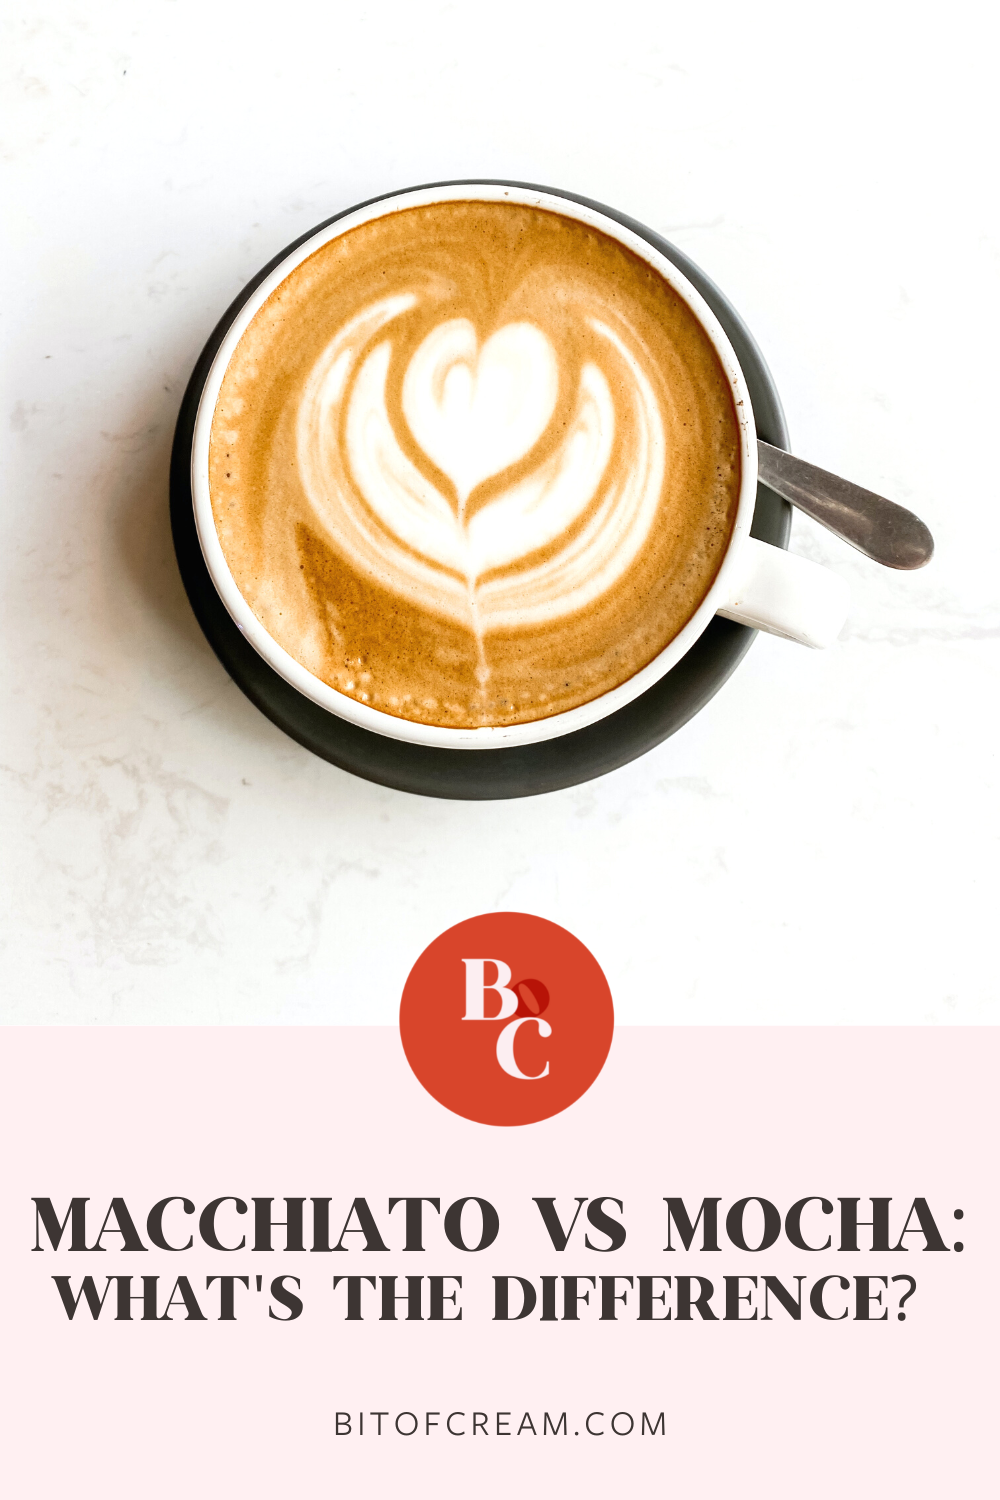 Macchiato vs mocha